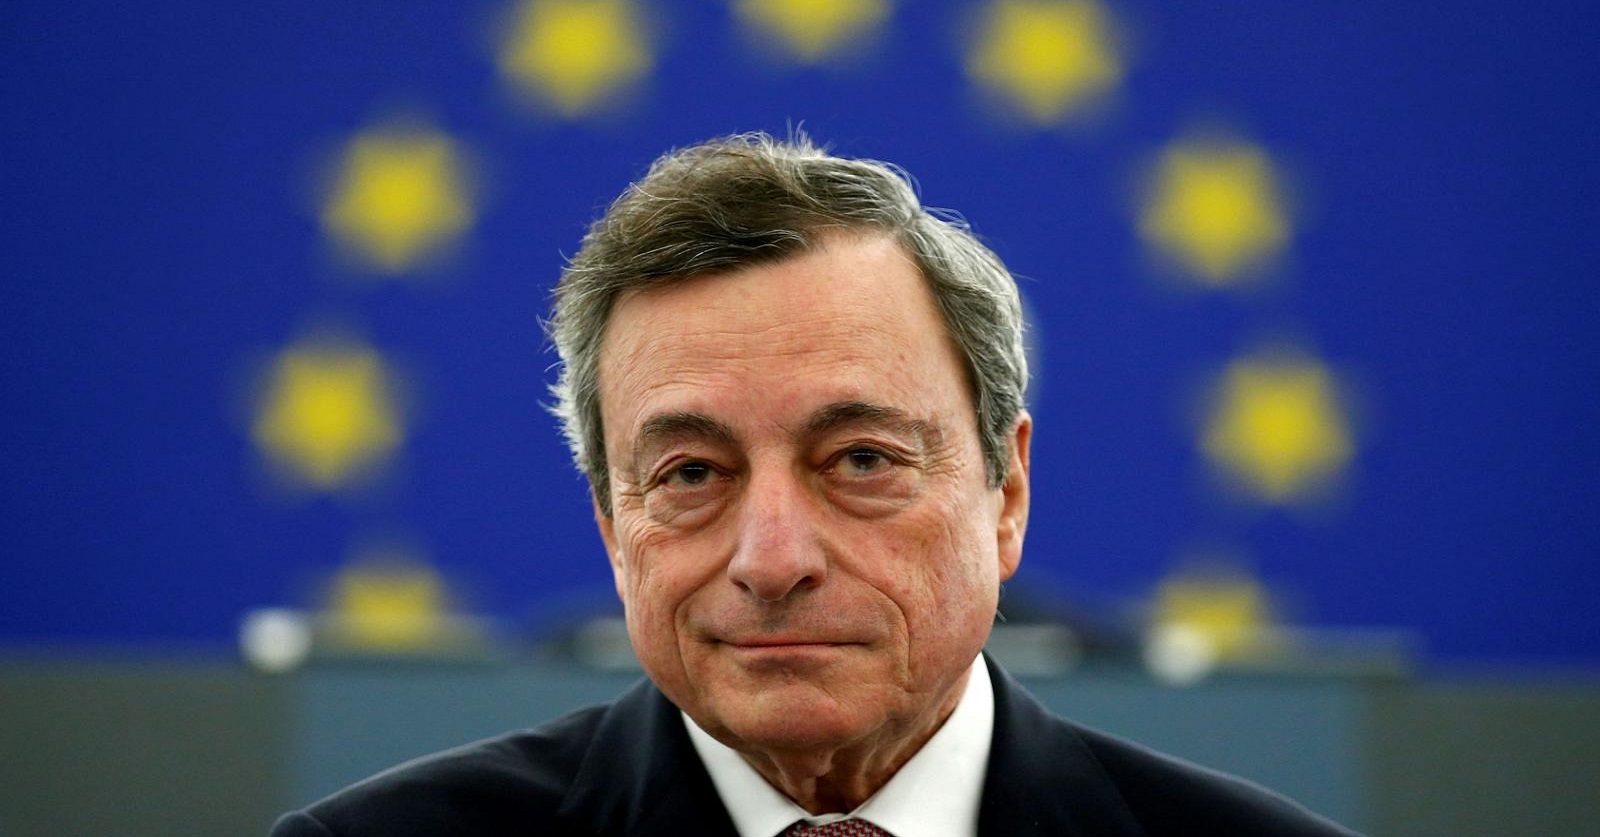 Risultato immagini per Mario Draghi immagini